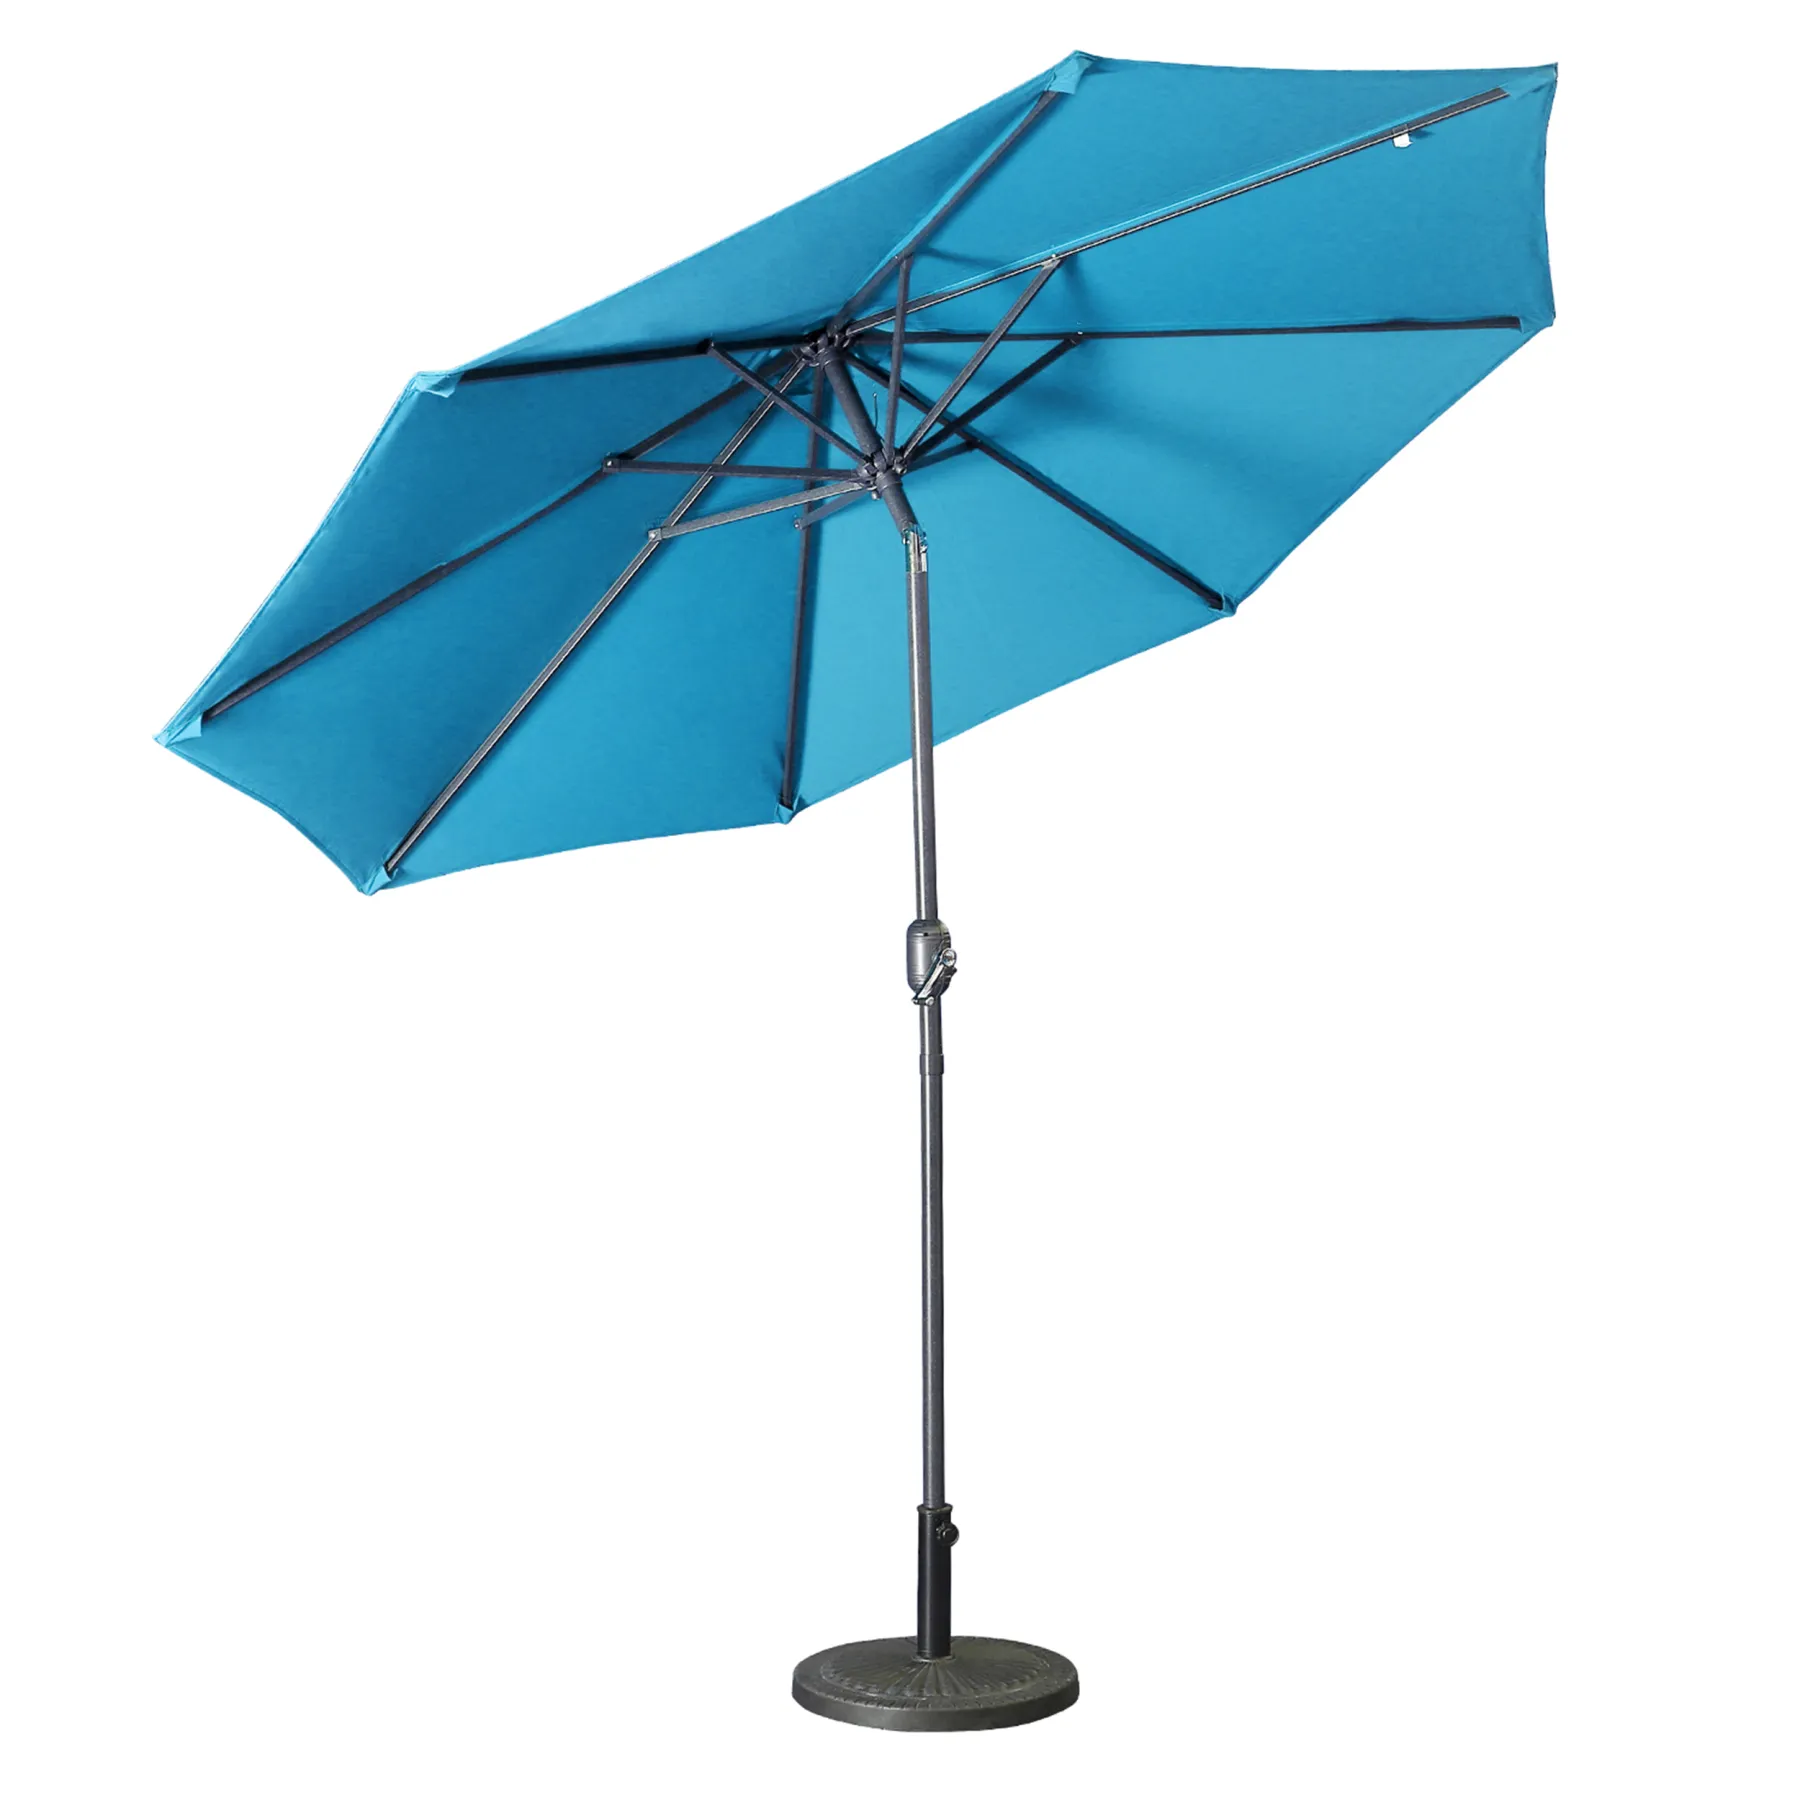 Casainc 9 ft. Alum Patio Umbrella in Lake Blue